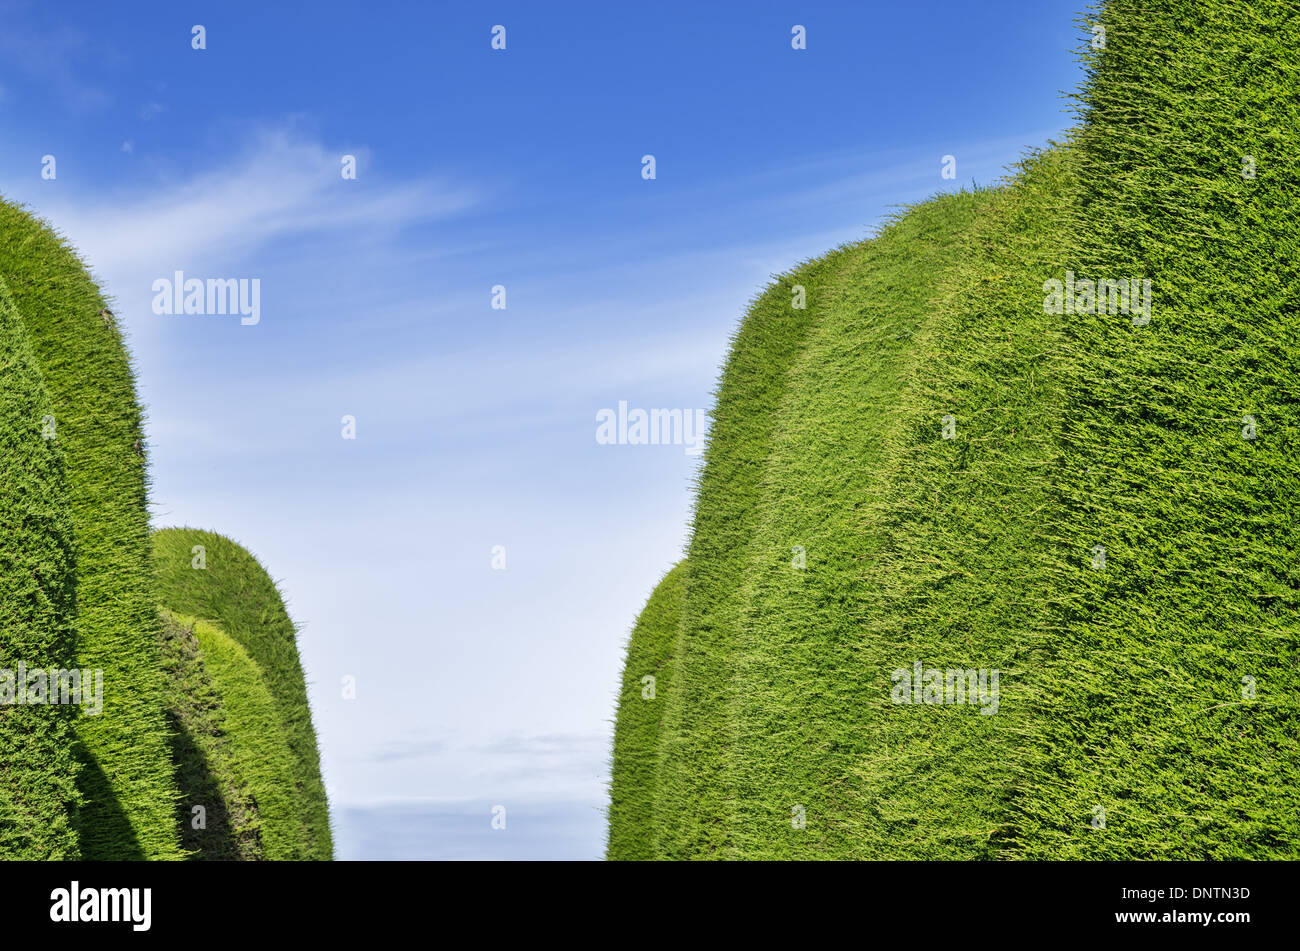 grüner Wacholder Hedge-Gang mit Himmelshintergrund Stockfoto